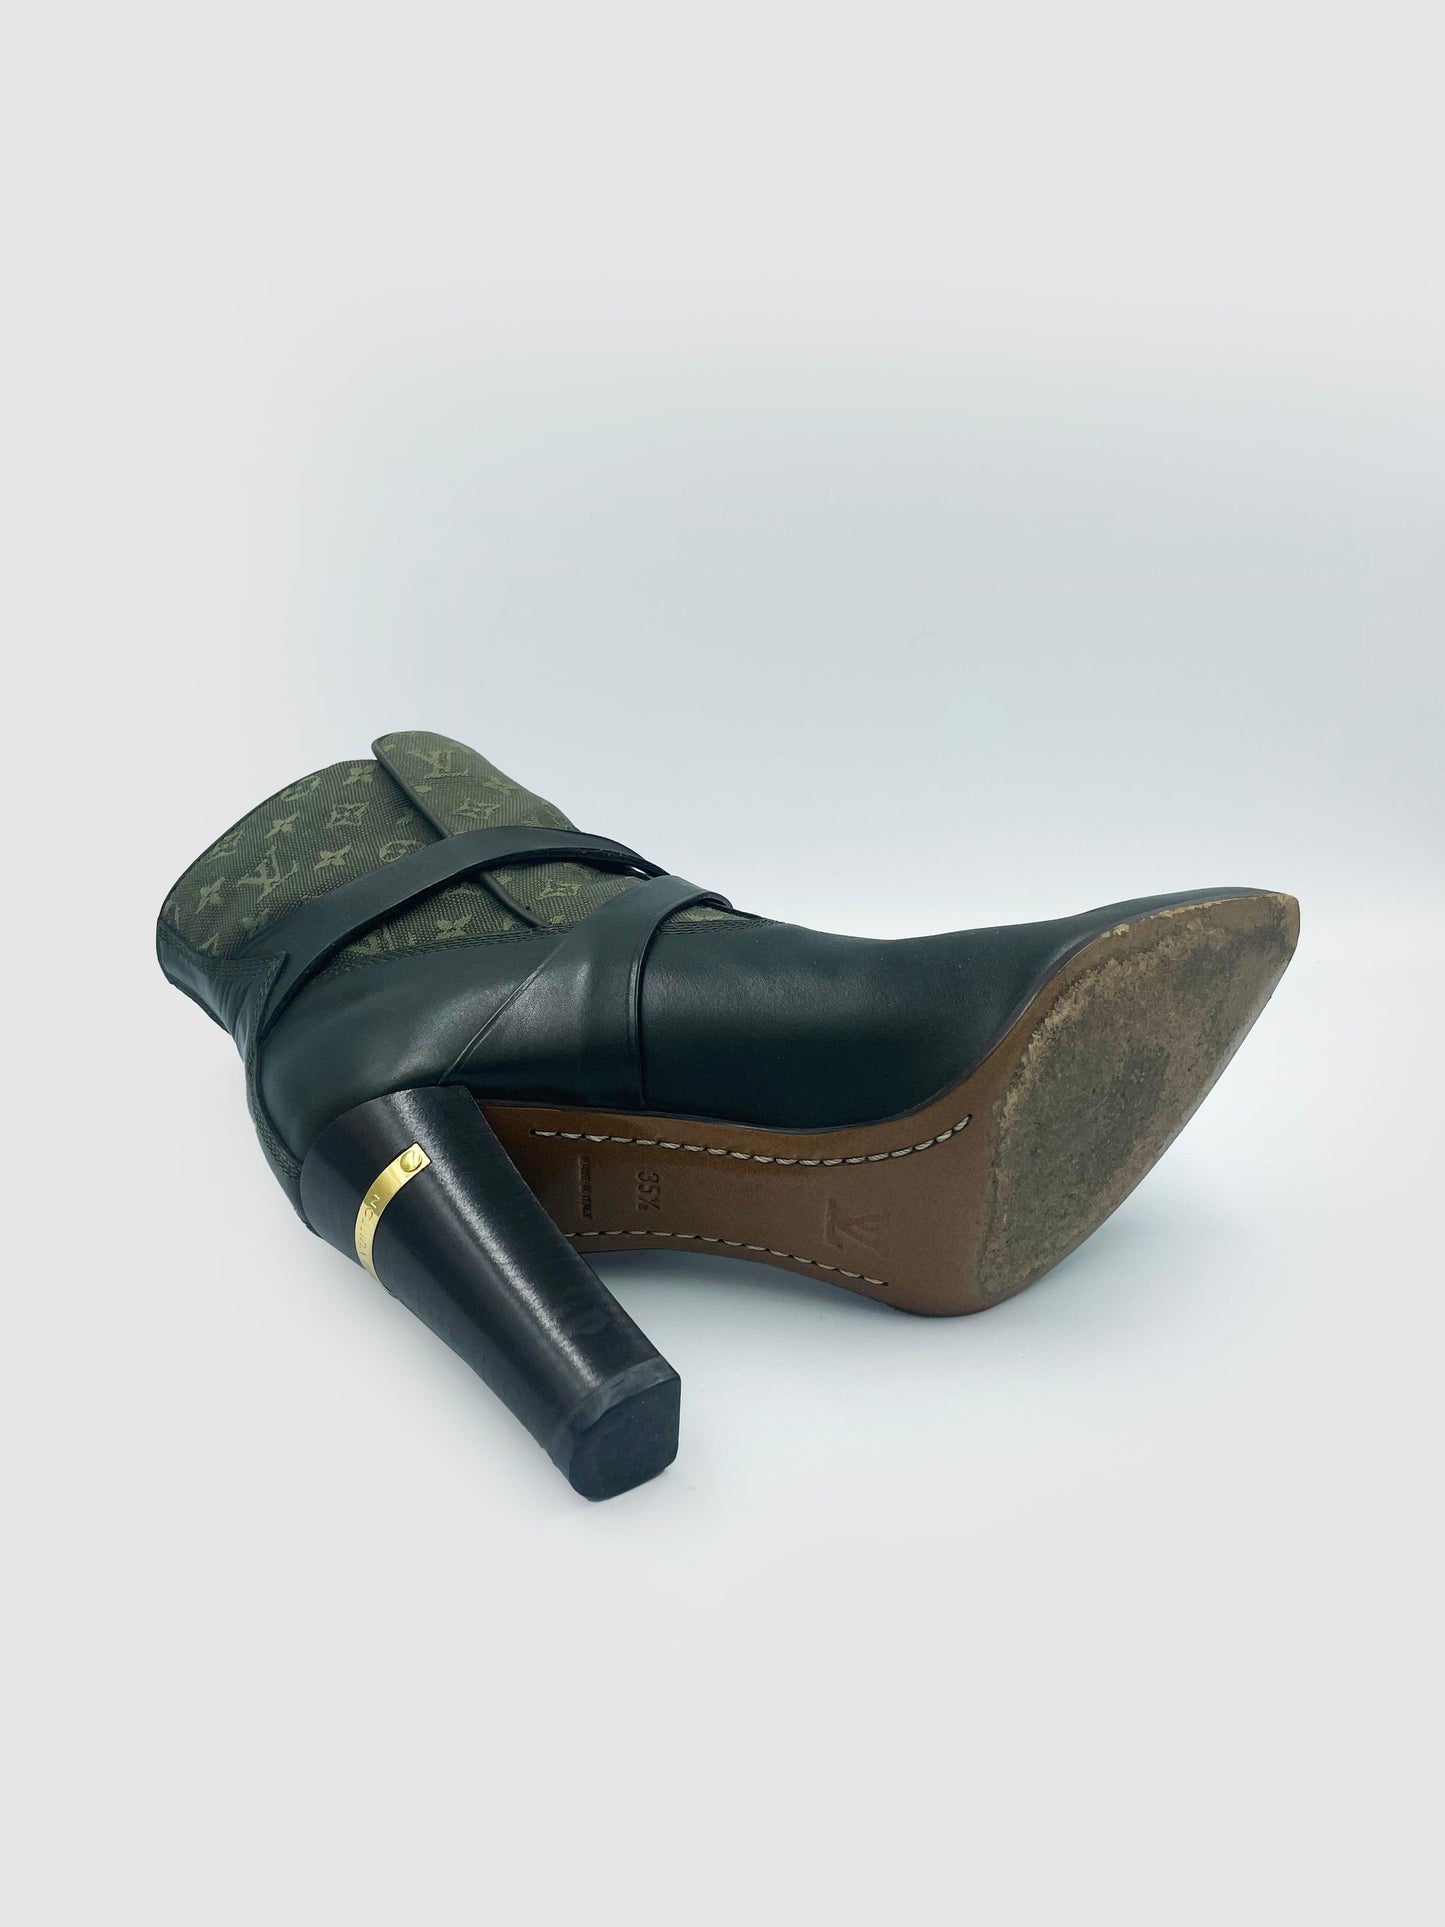 Louis Vuitton Monogram Denim Ankle Boots - Size 35.5